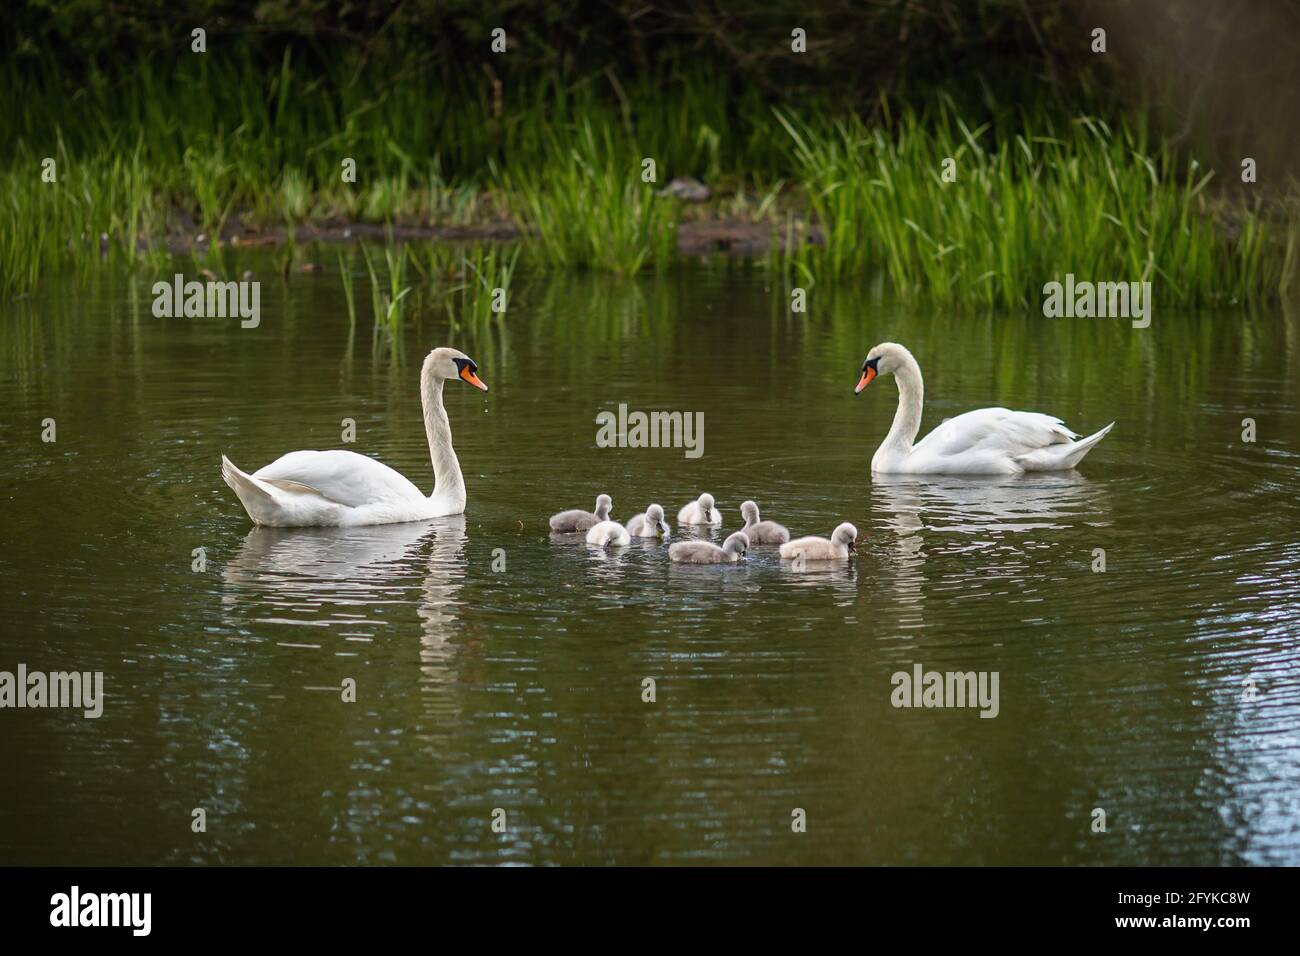 Familia de cisnes enmudos blancos salvajes con siete adorables muelles nadando en un lago verde. Foto de stock